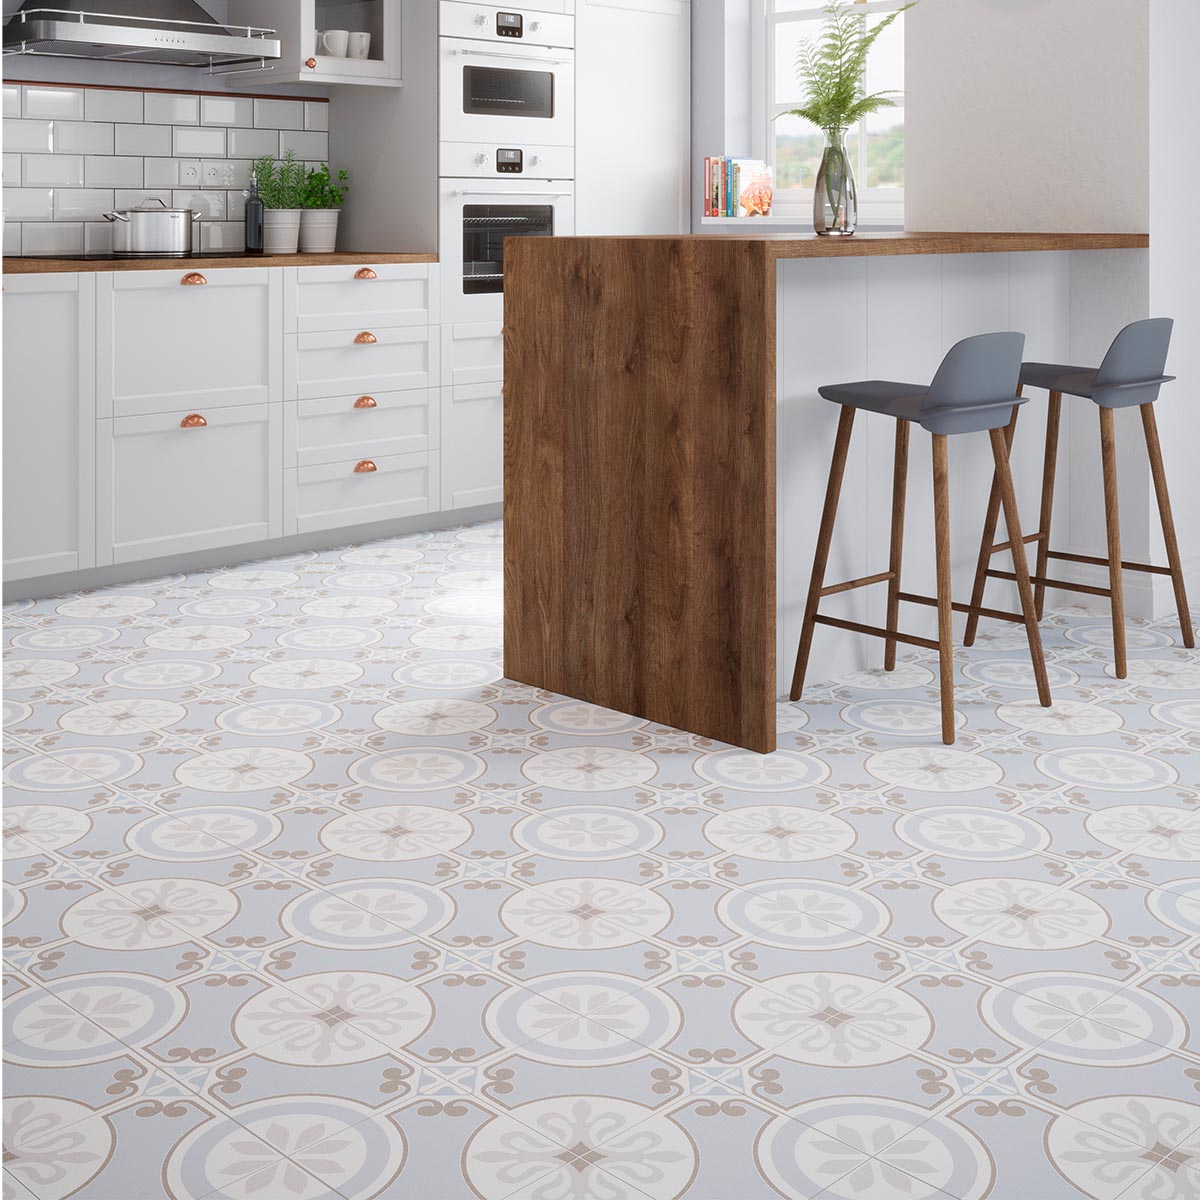 Bold kitchen floor design